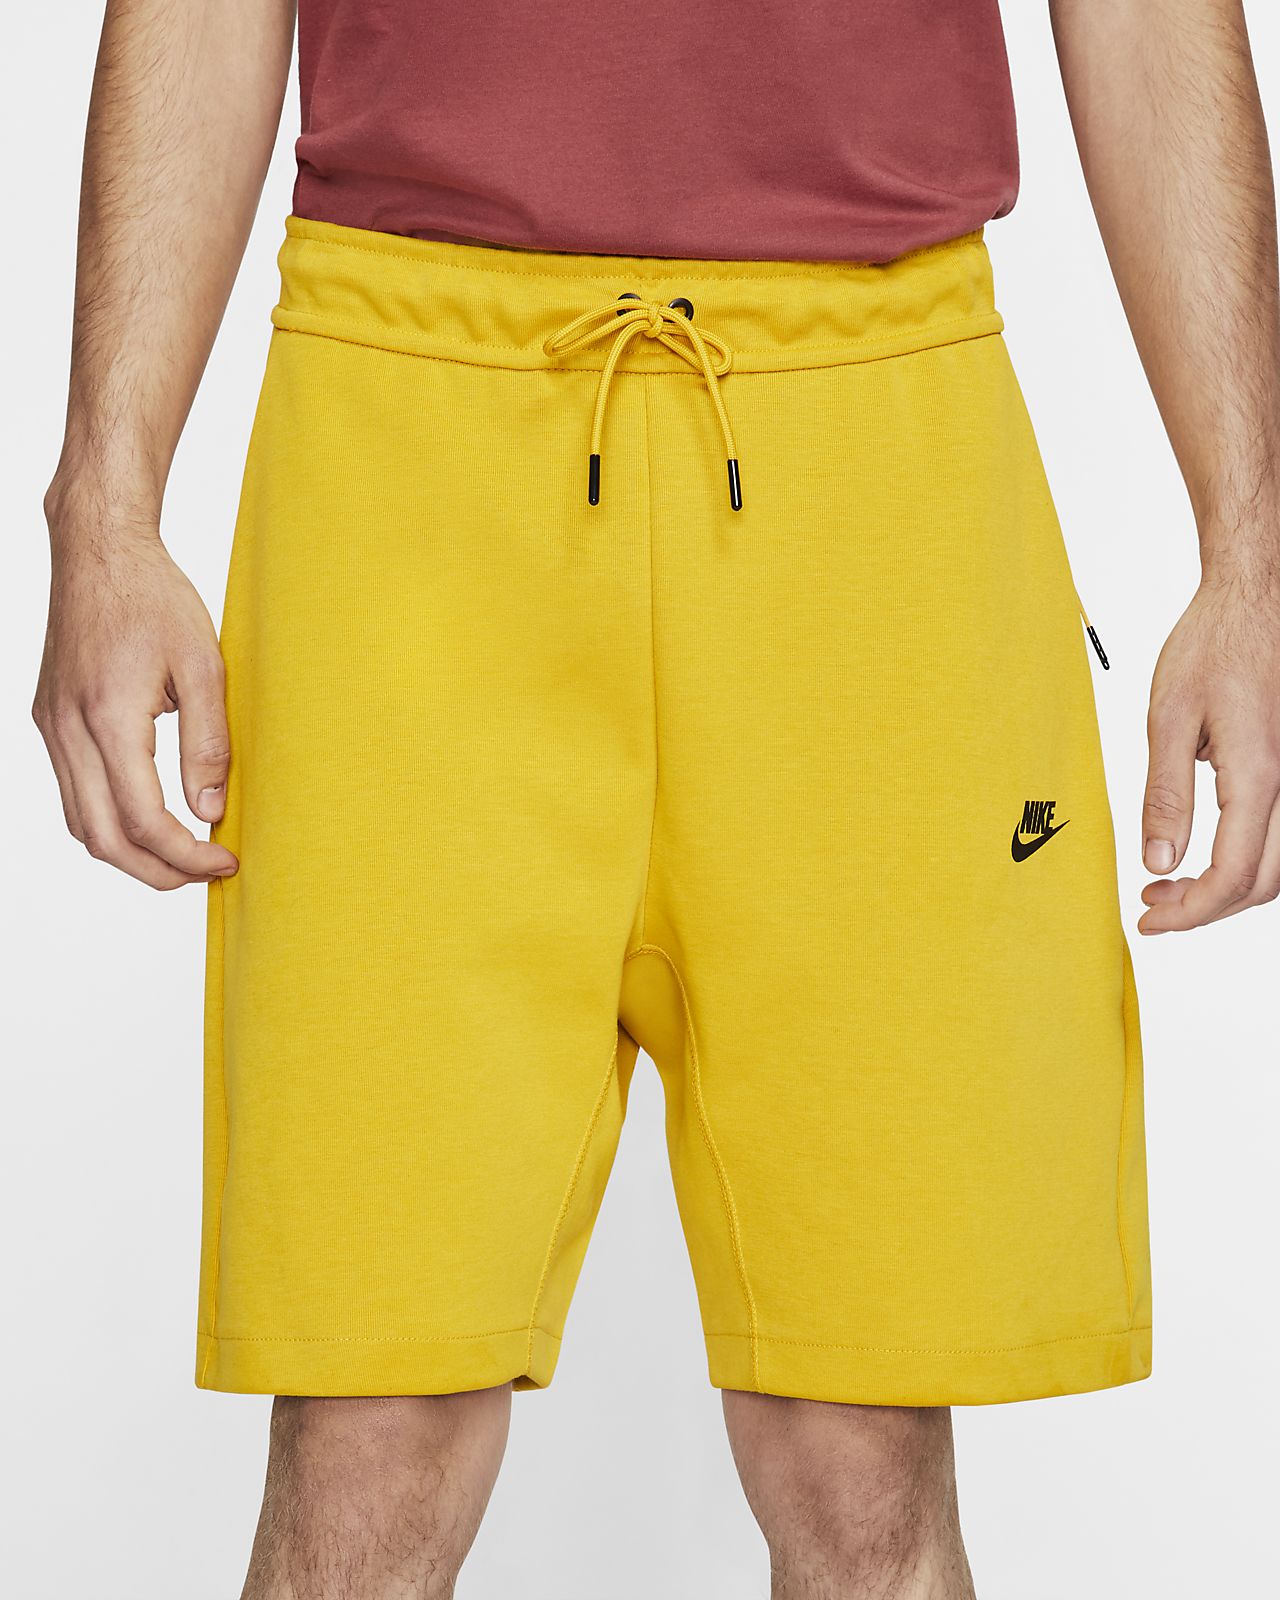 nike yellow fleece shorts